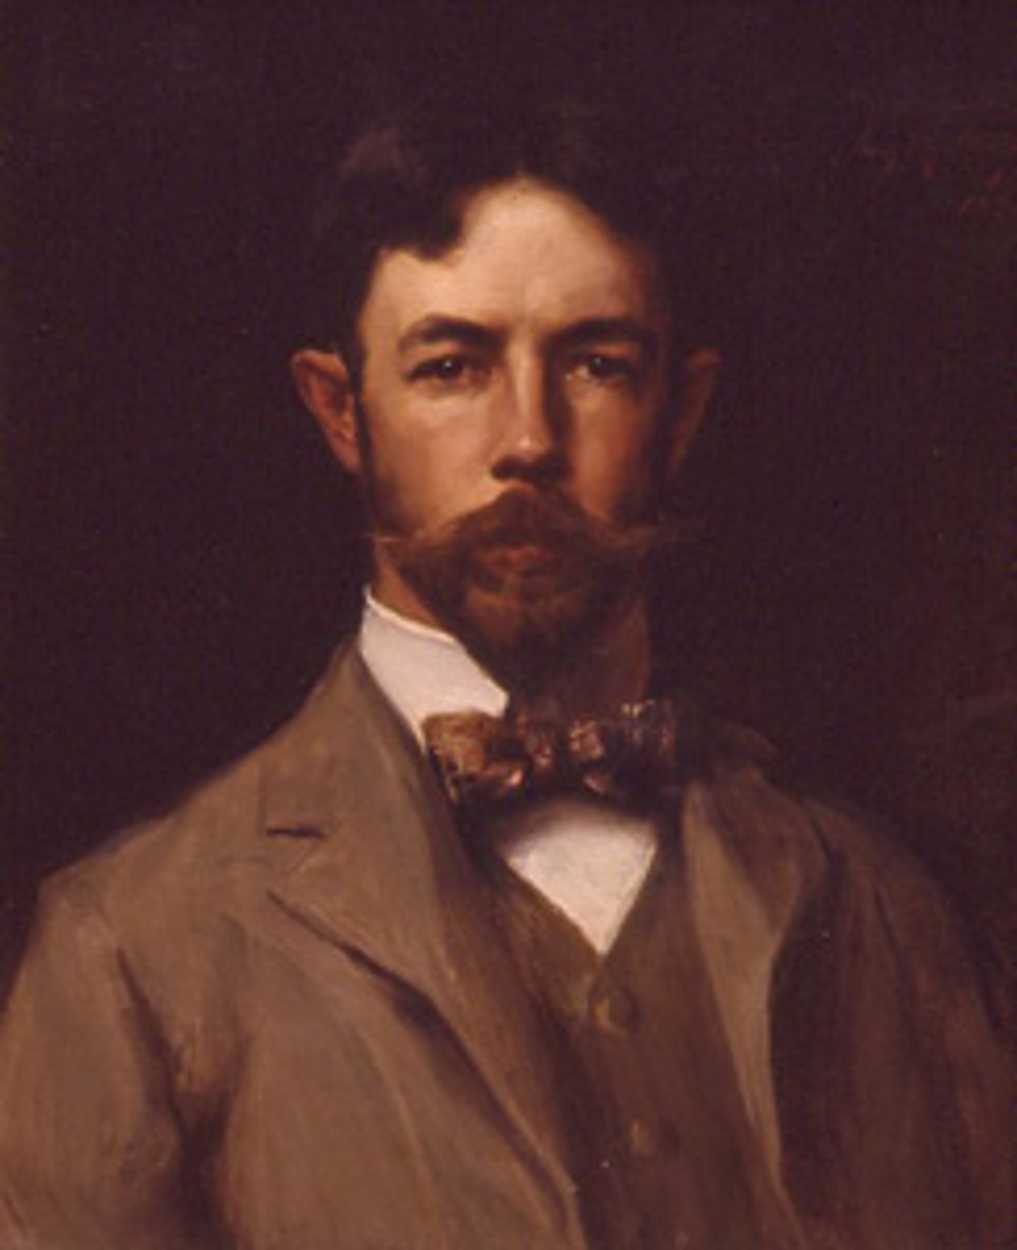 Irving Ramsey Wiles - 8. April 1861 - 29. Juli 1948